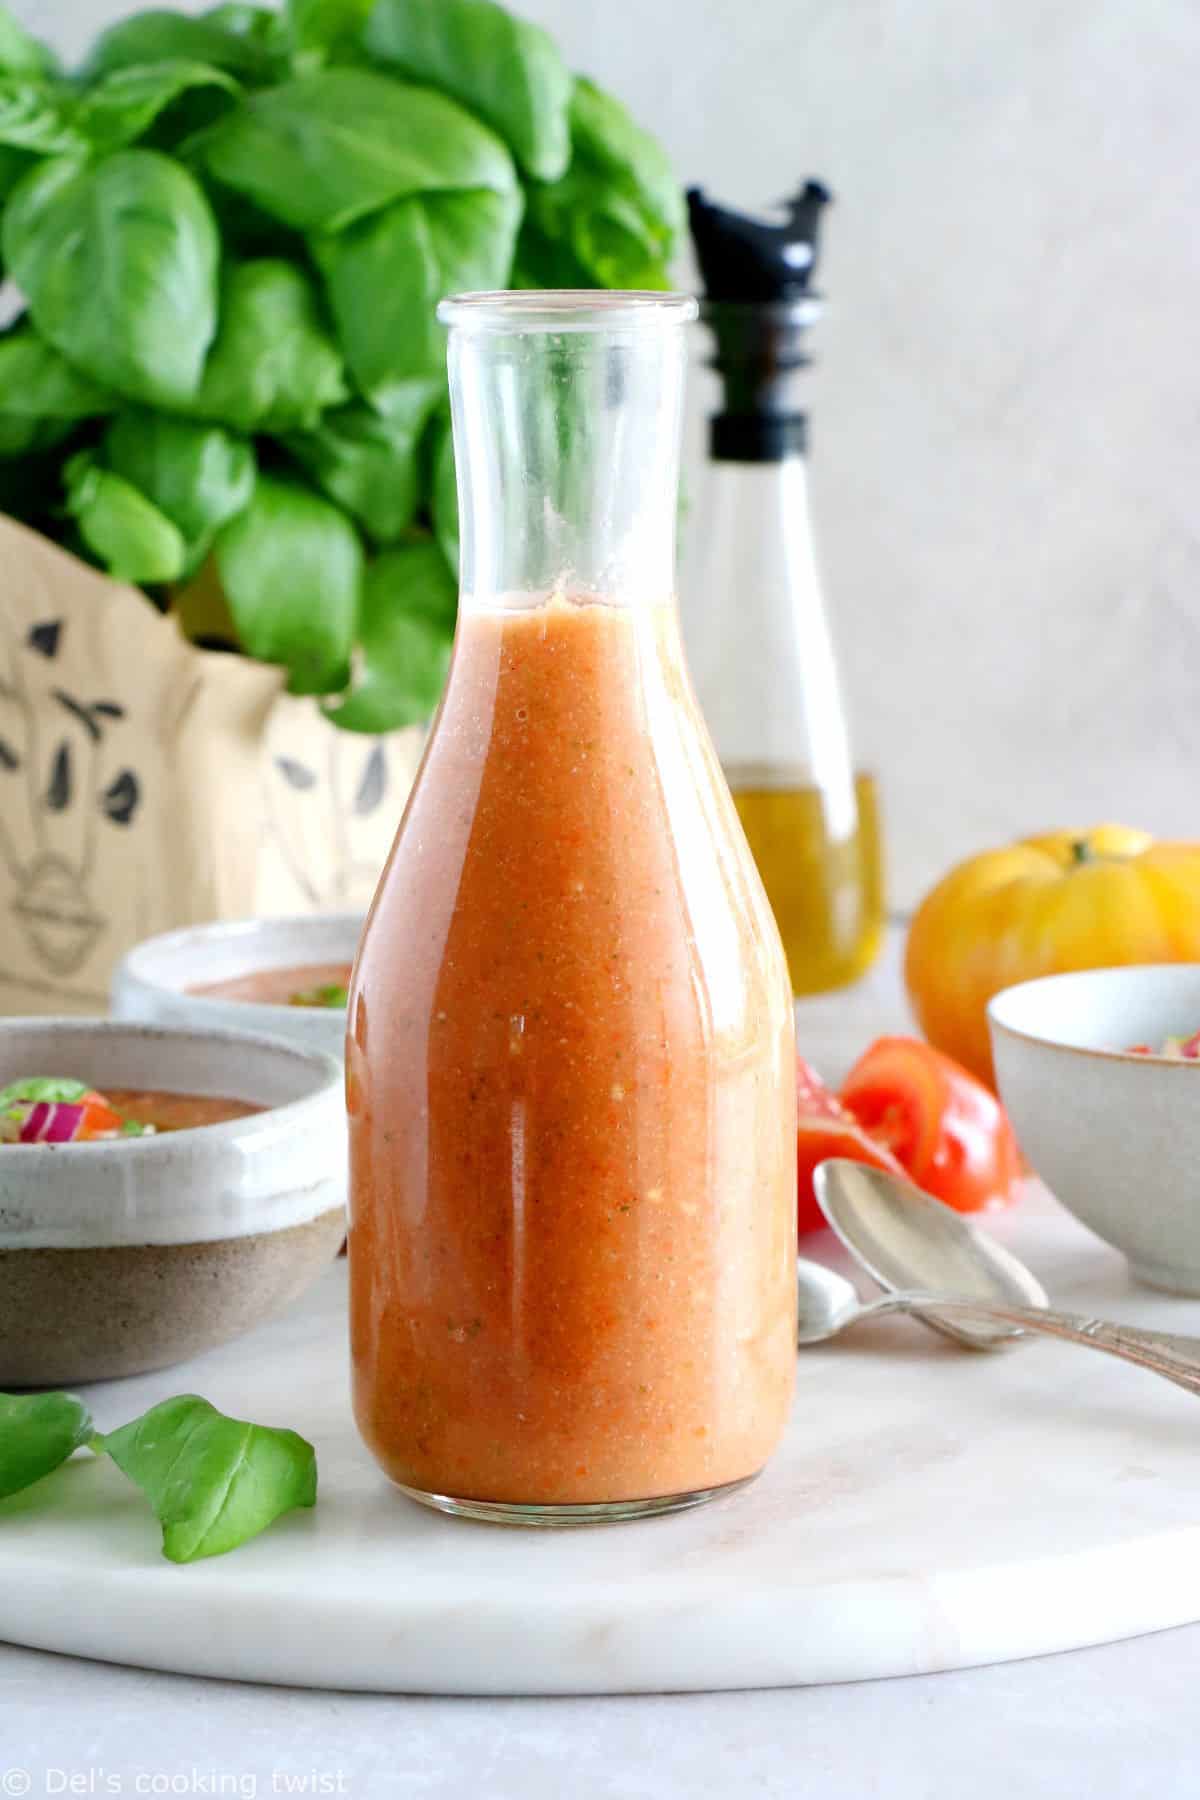 Rafraîchissez-vous avec ce gaspacho express, réalisé en moins de 10 minutes chrono avec des tomates bien mûres et autres légumes gorgés de soleil.